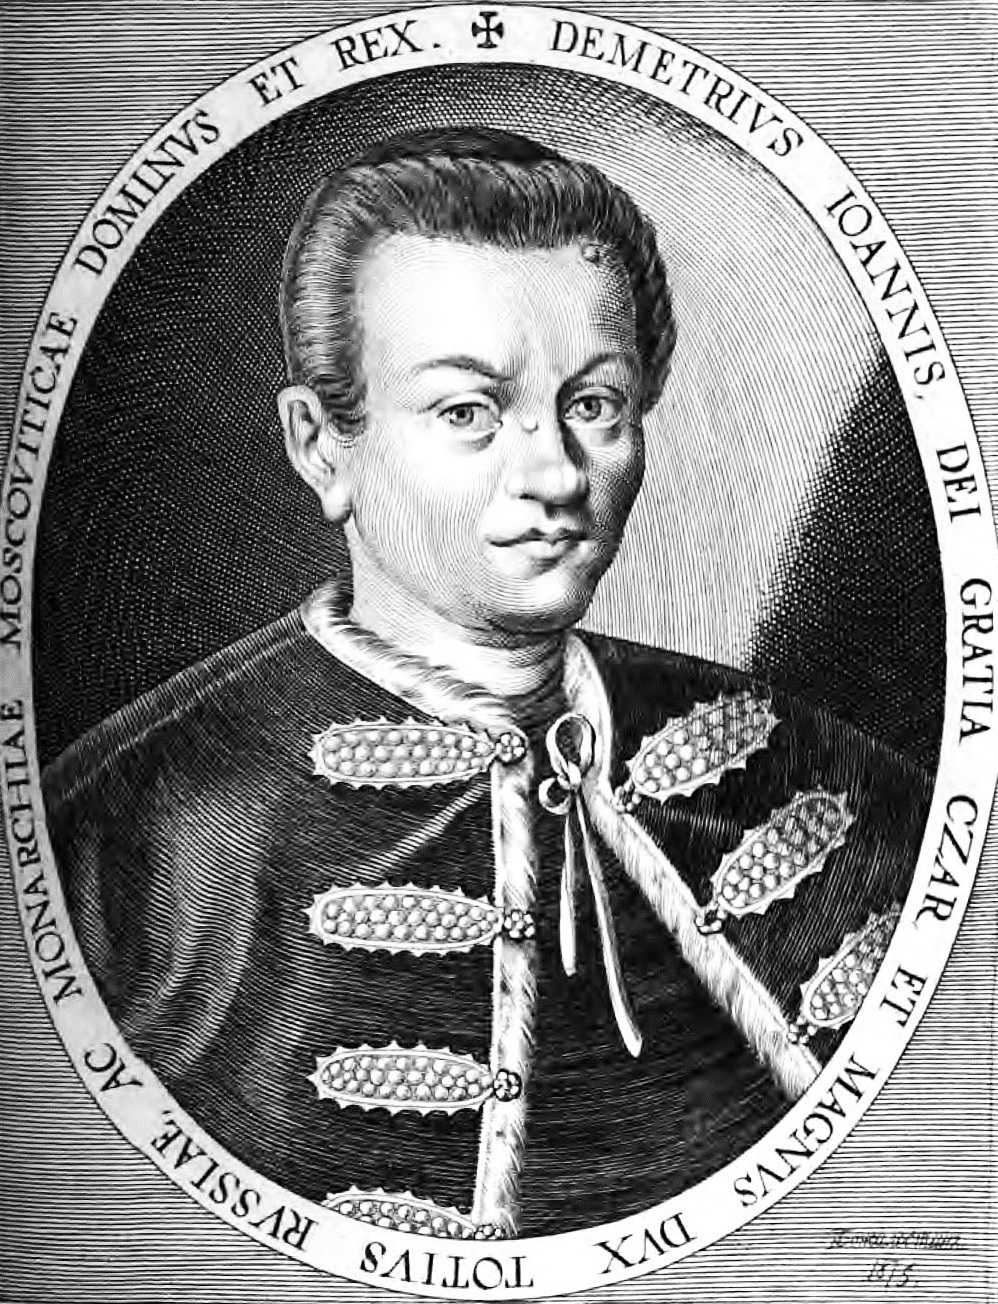 Лжедмитрий i (1581-1606) - краткая биография и особенности правления царя россии